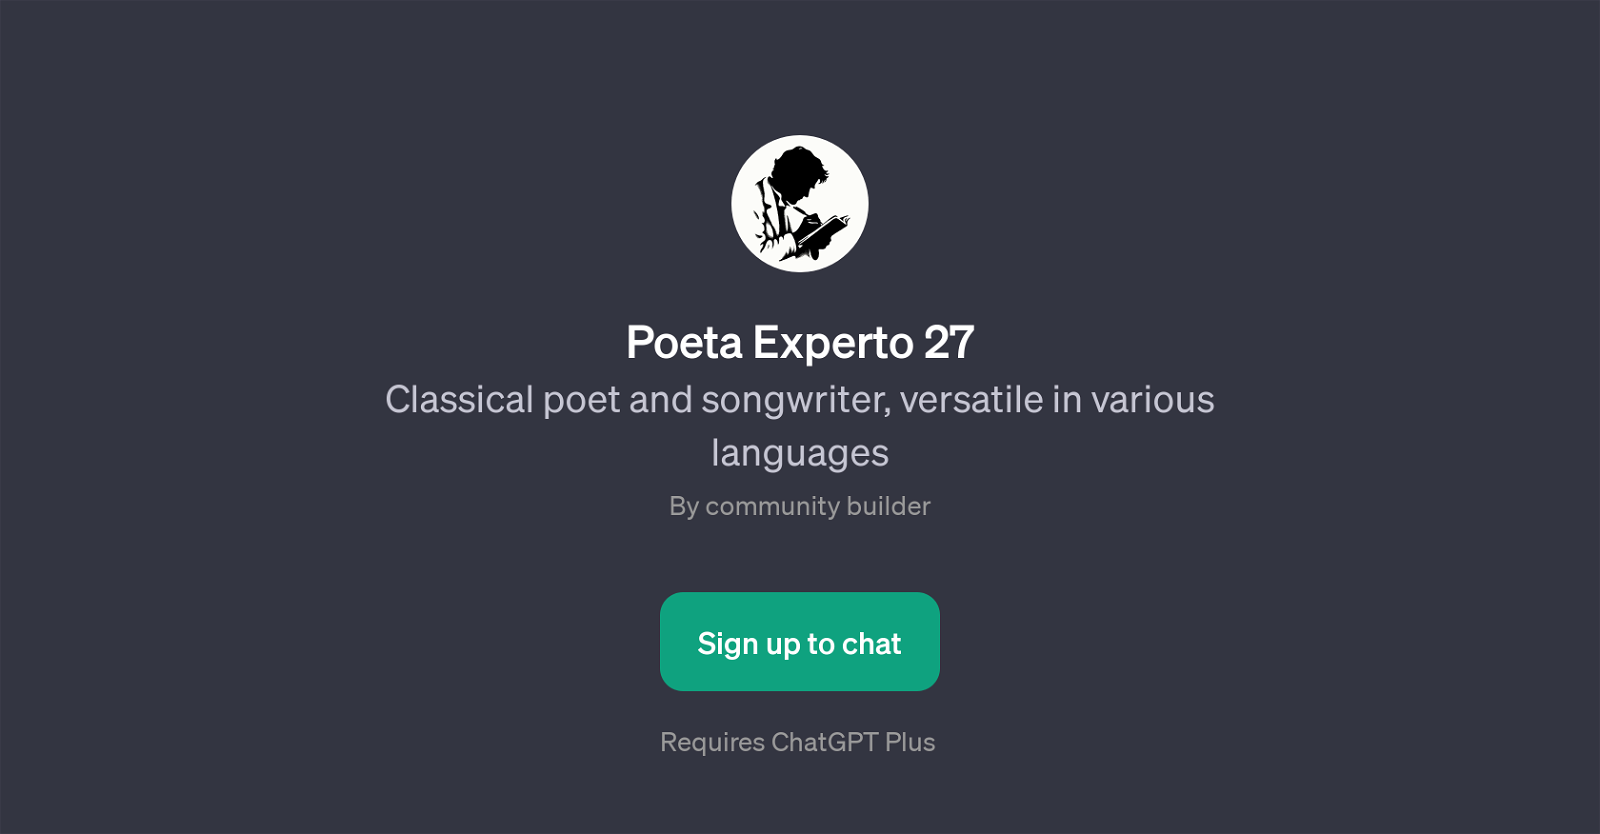 Poeta Experto 27 website